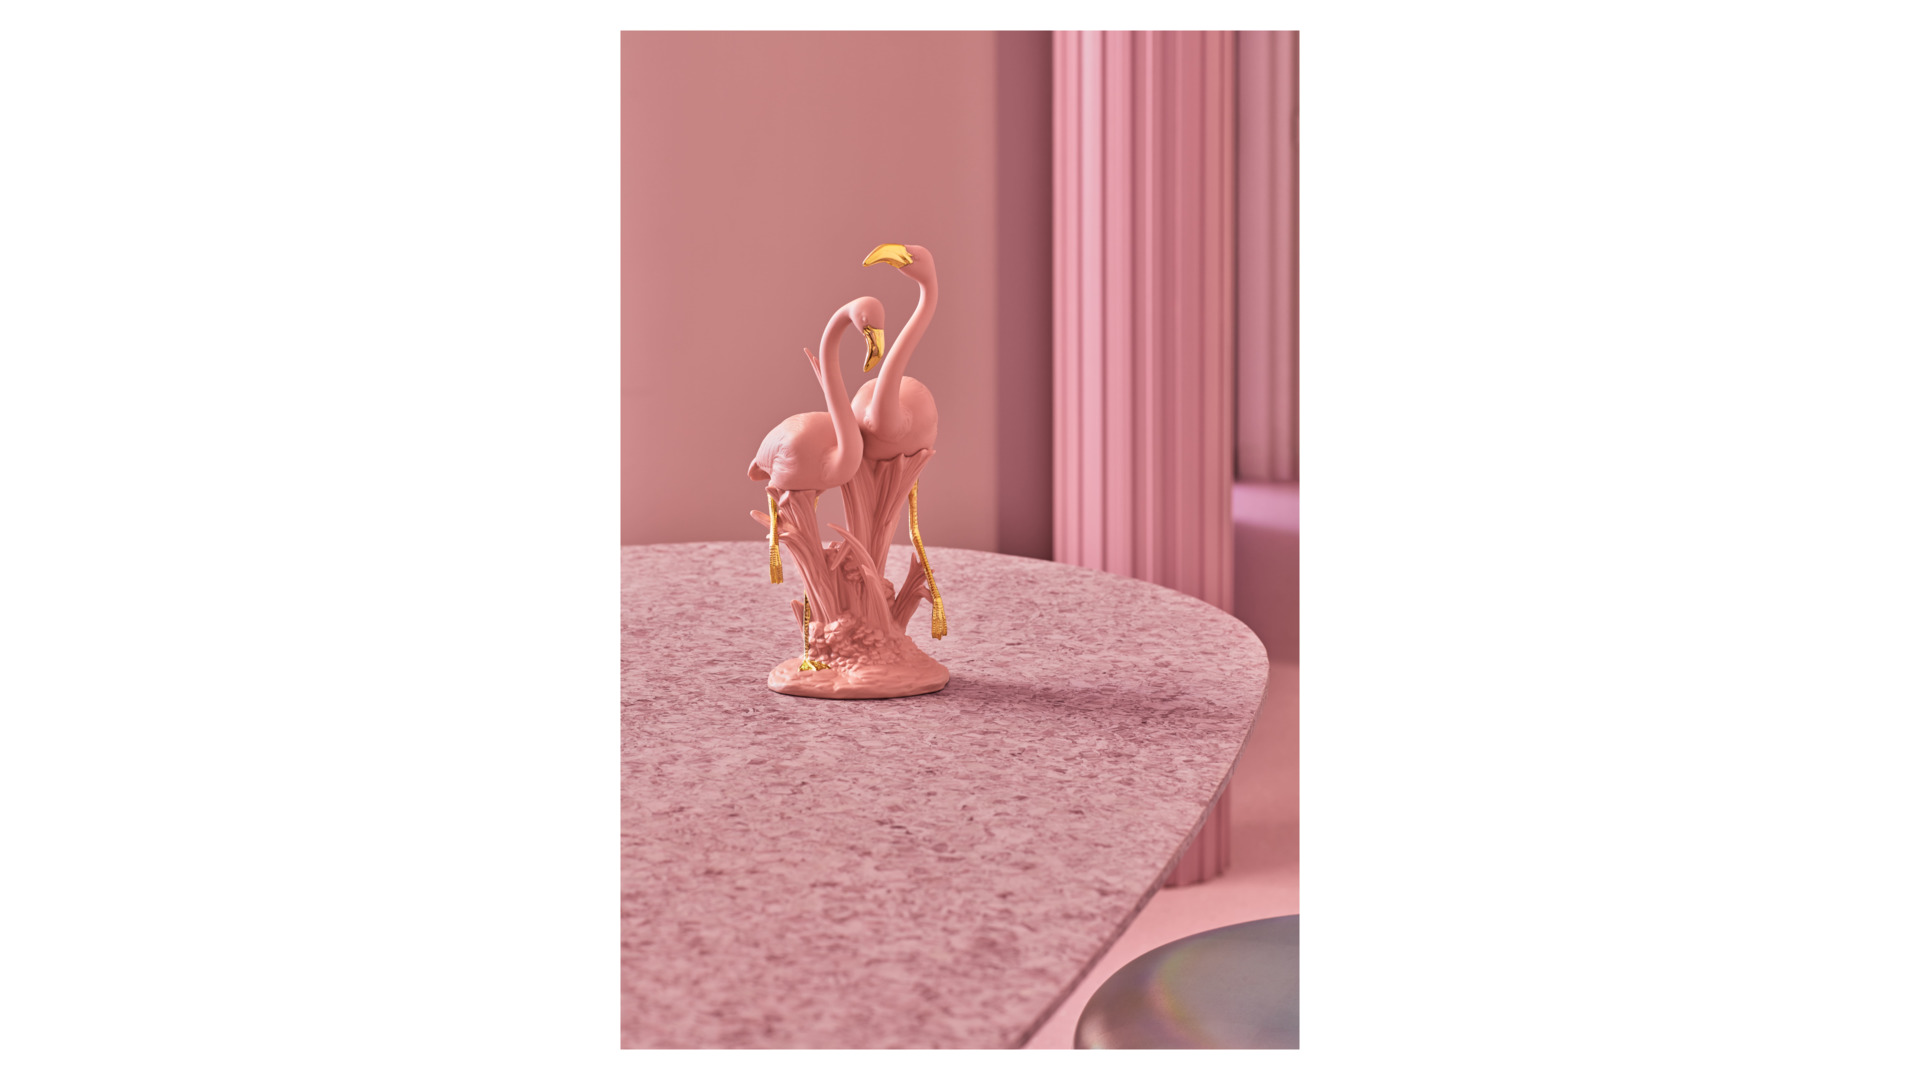 Фигурка Lladro Розовый фламинго 33х15х17 см, фарфор